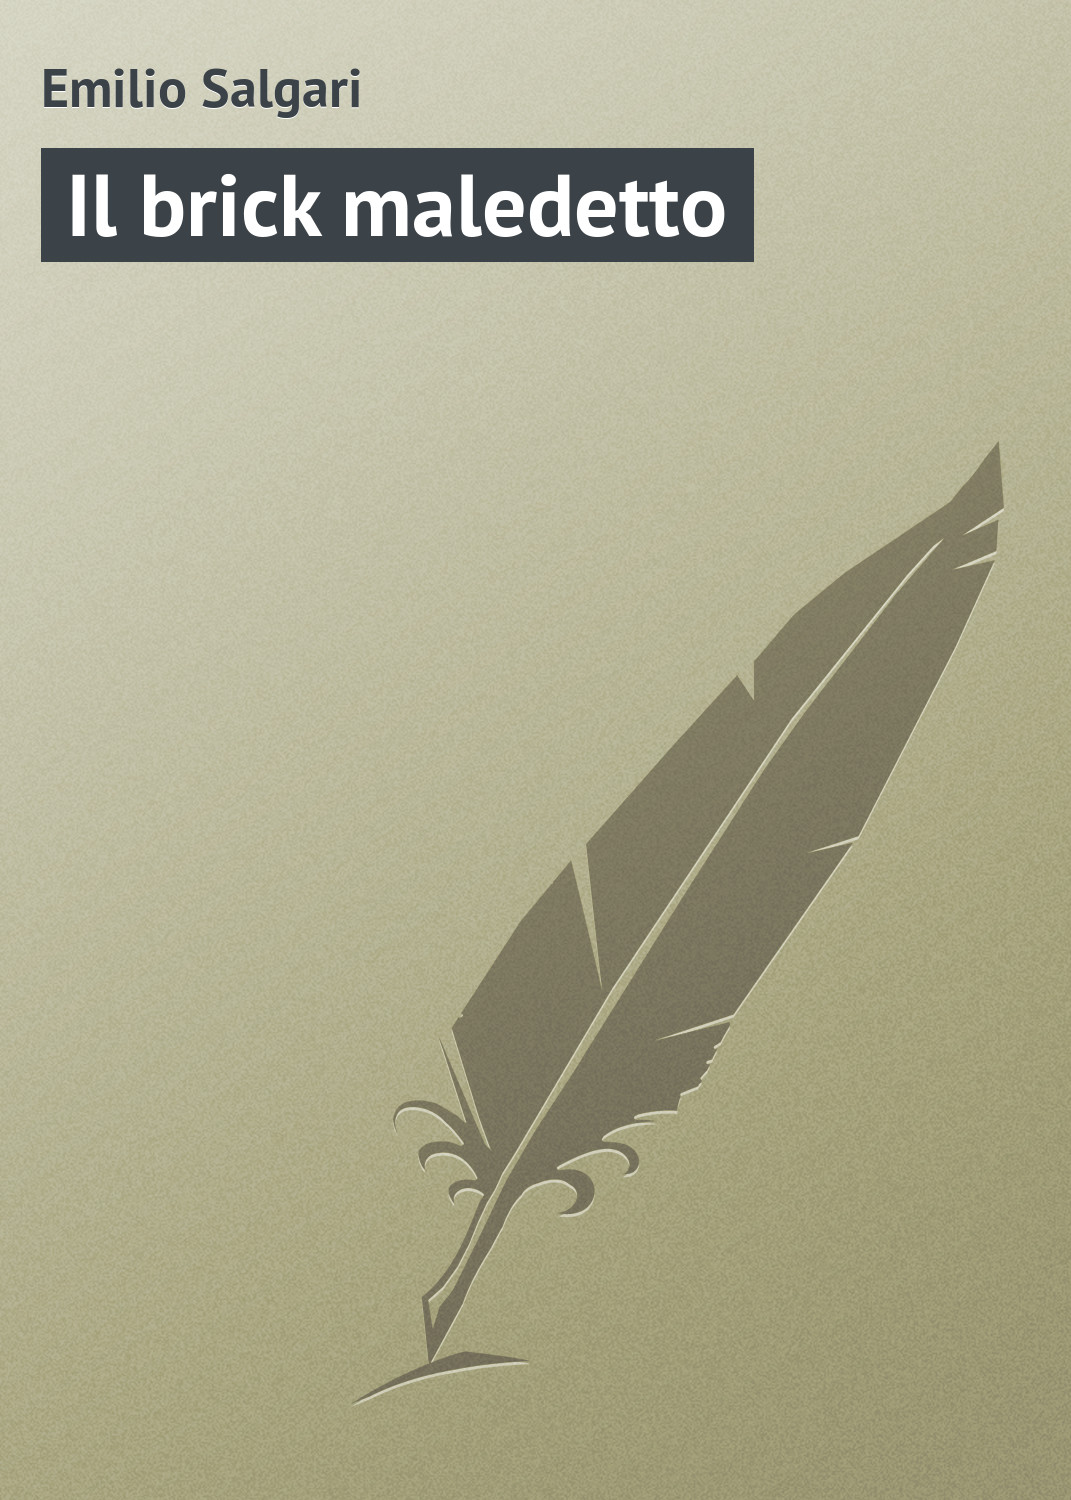 Книга Il brick maledetto из серии , созданная Emilio Salgari, может относится к жанру Зарубежная старинная литература, Зарубежная классика. Стоимость электронной книги Il brick maledetto с идентификатором 21104054 составляет 5.99 руб.